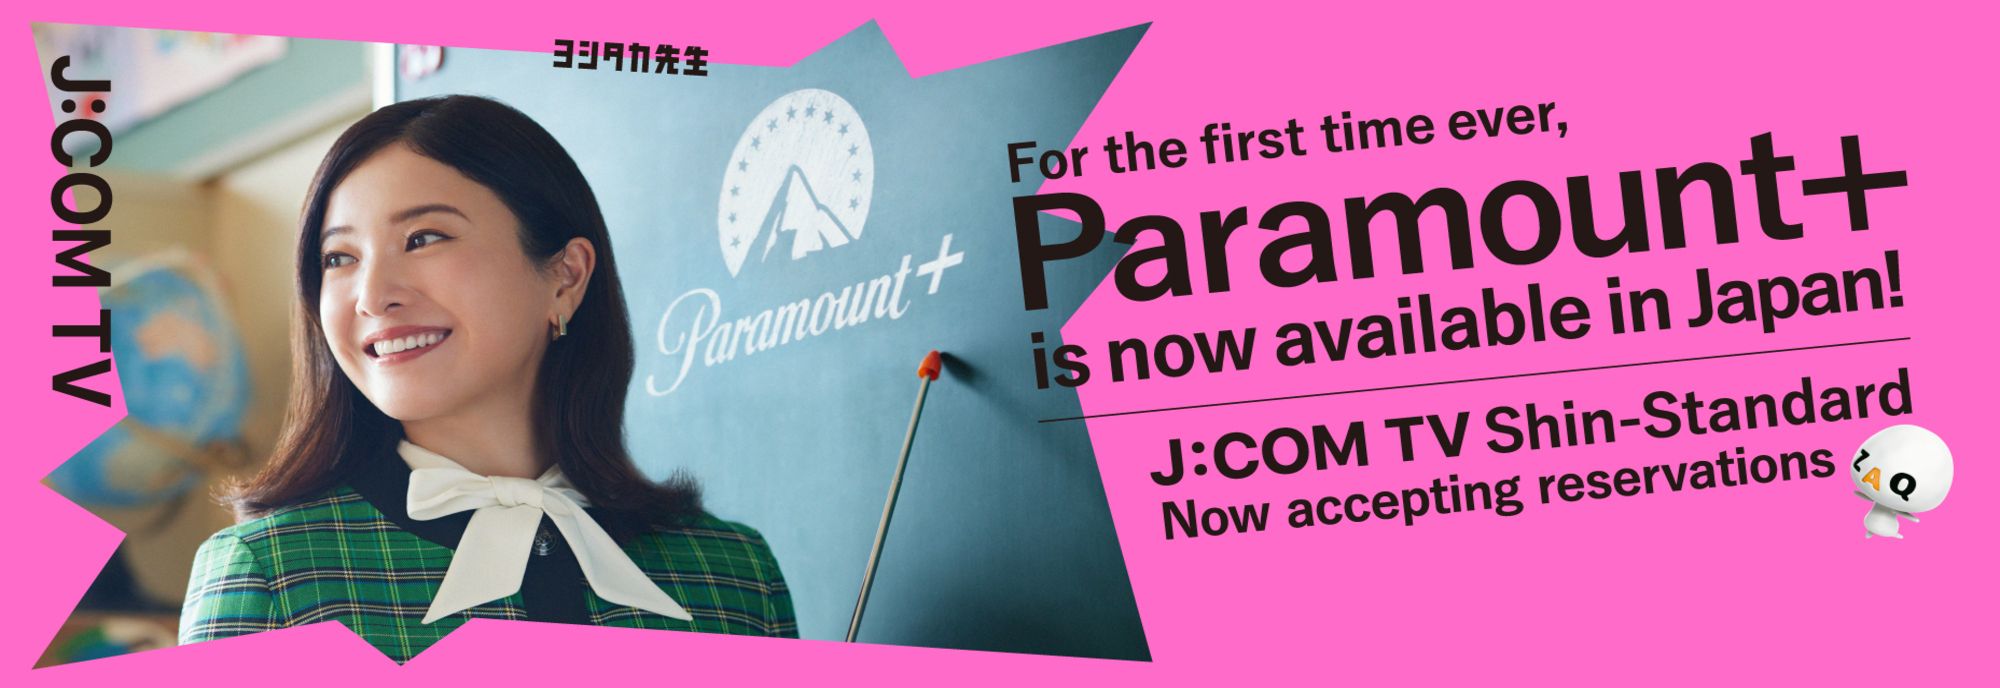 Paramount+ chega ao Japão pela primeira vez! J:COM TV Shin Standard agora disponível